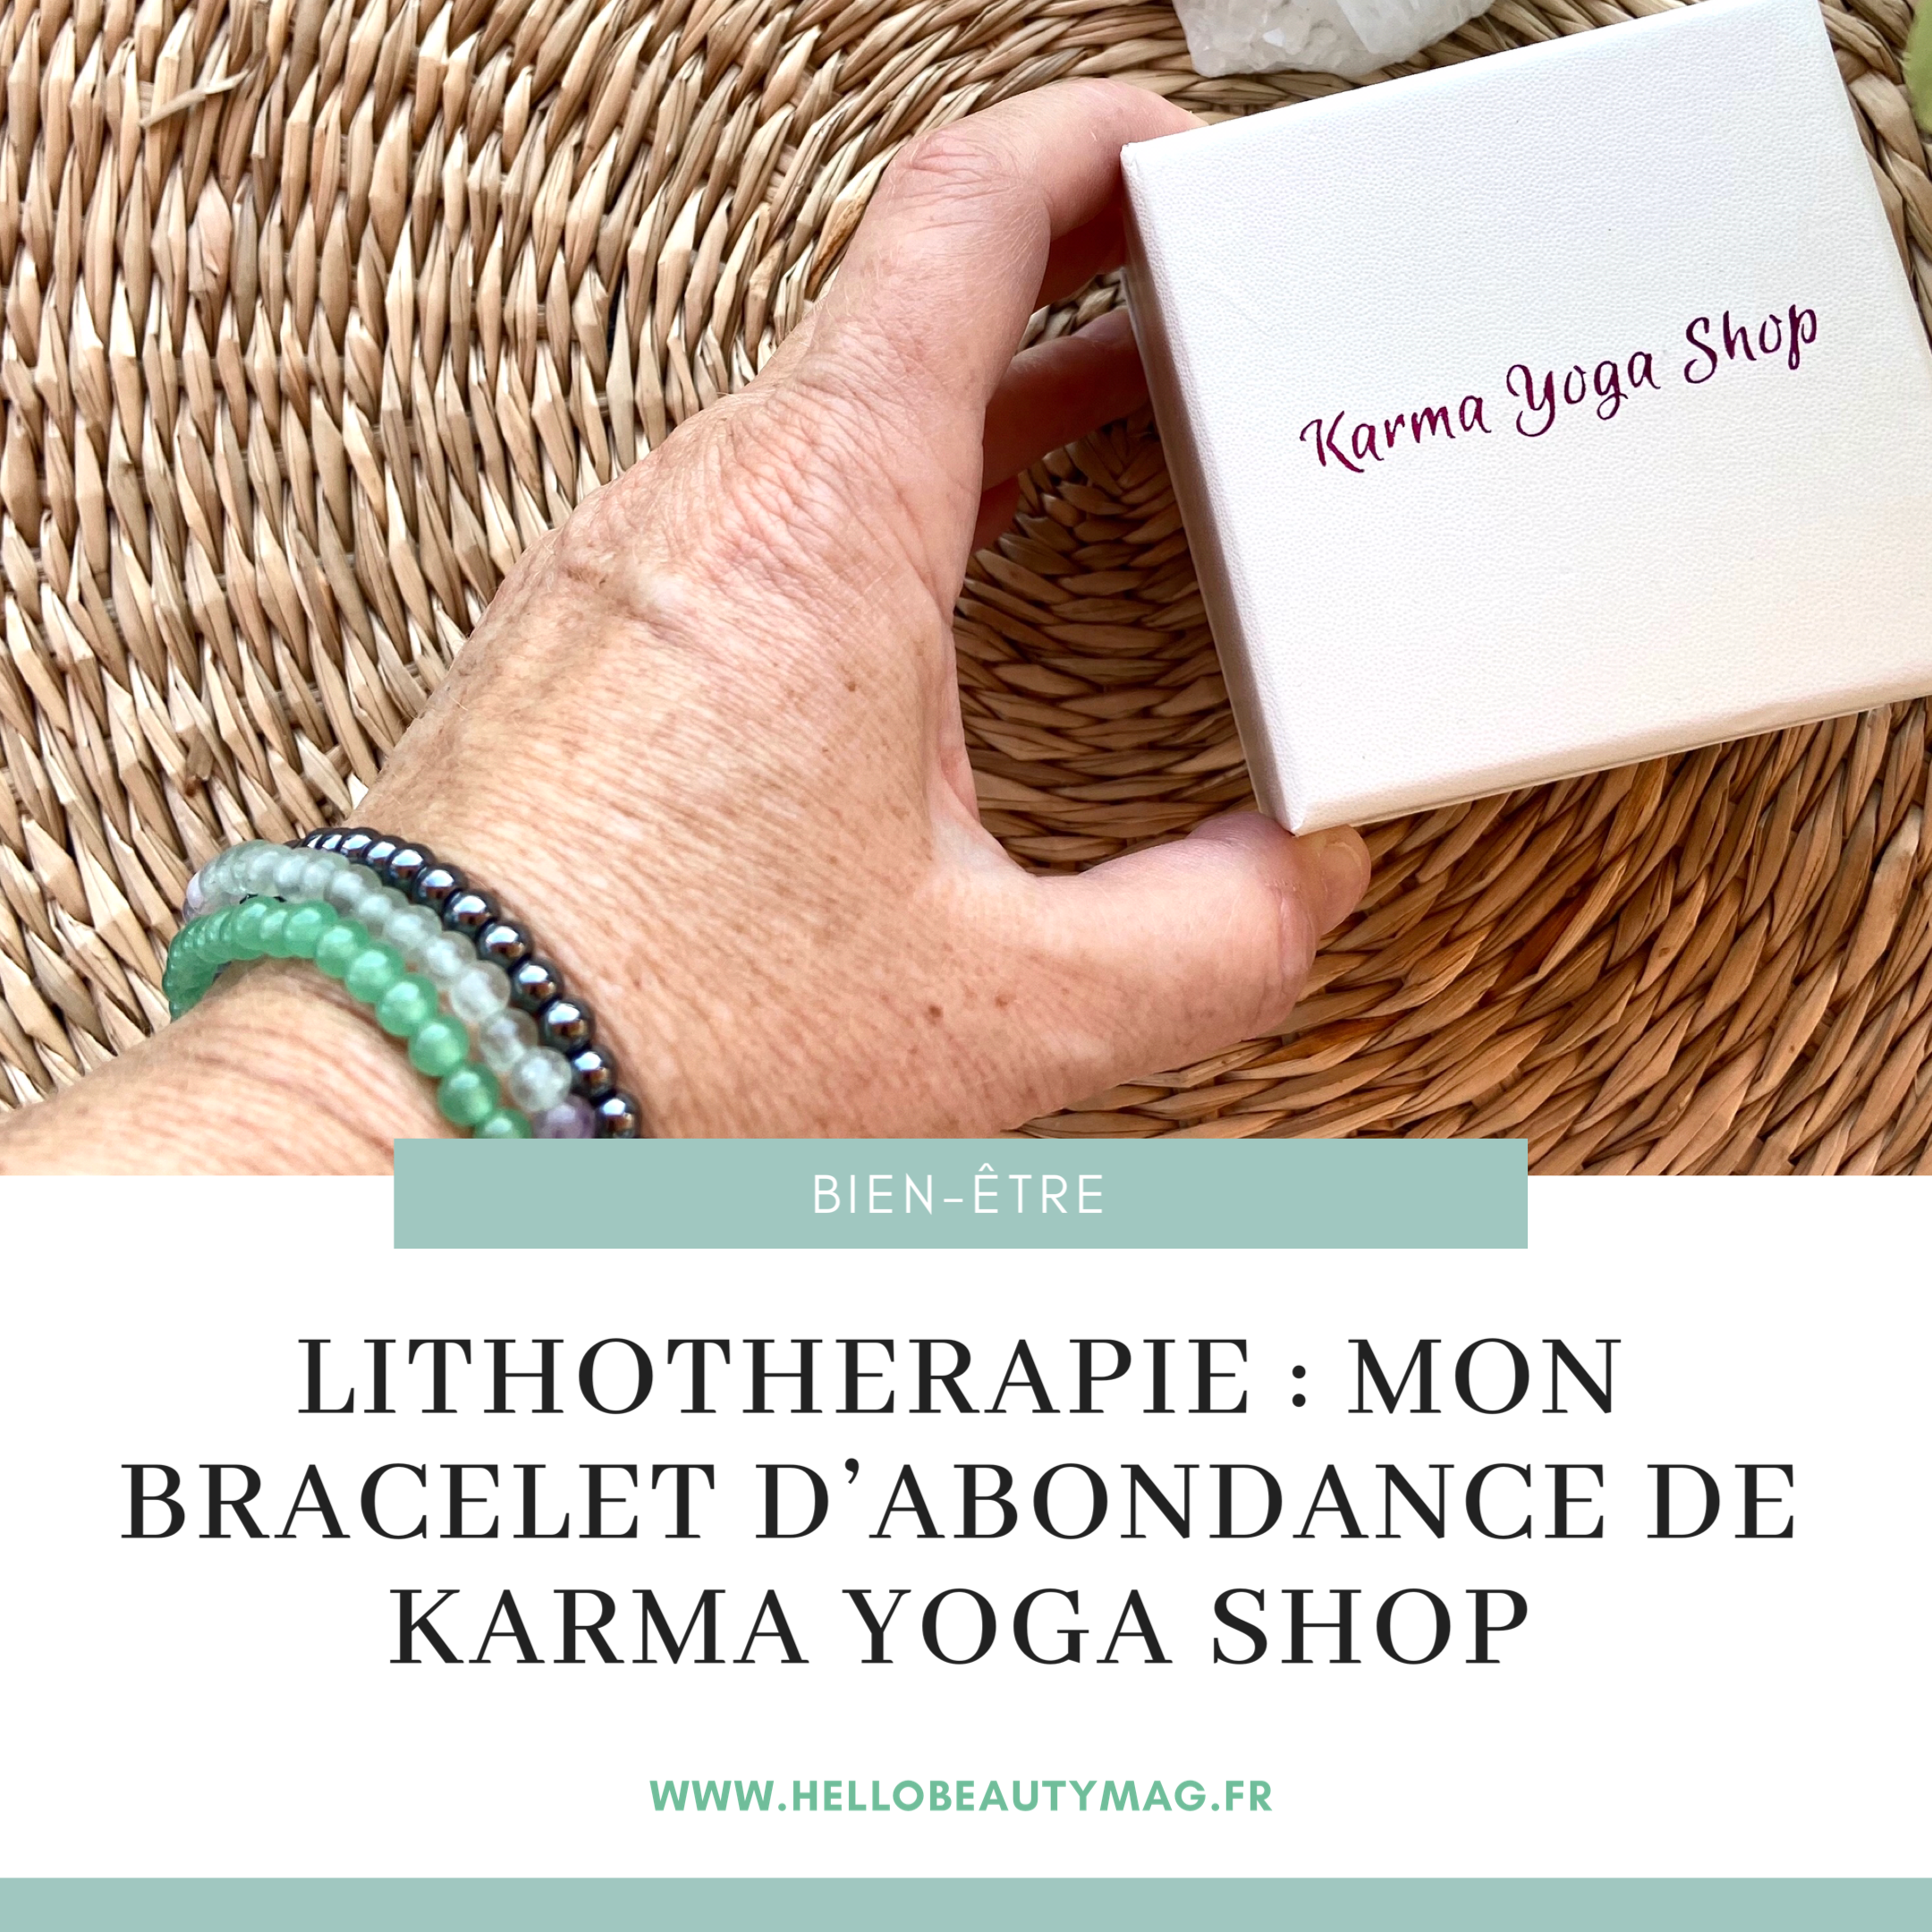 lithotherapie-bracelet-abondance-karma-yoga-shop-bien-etre